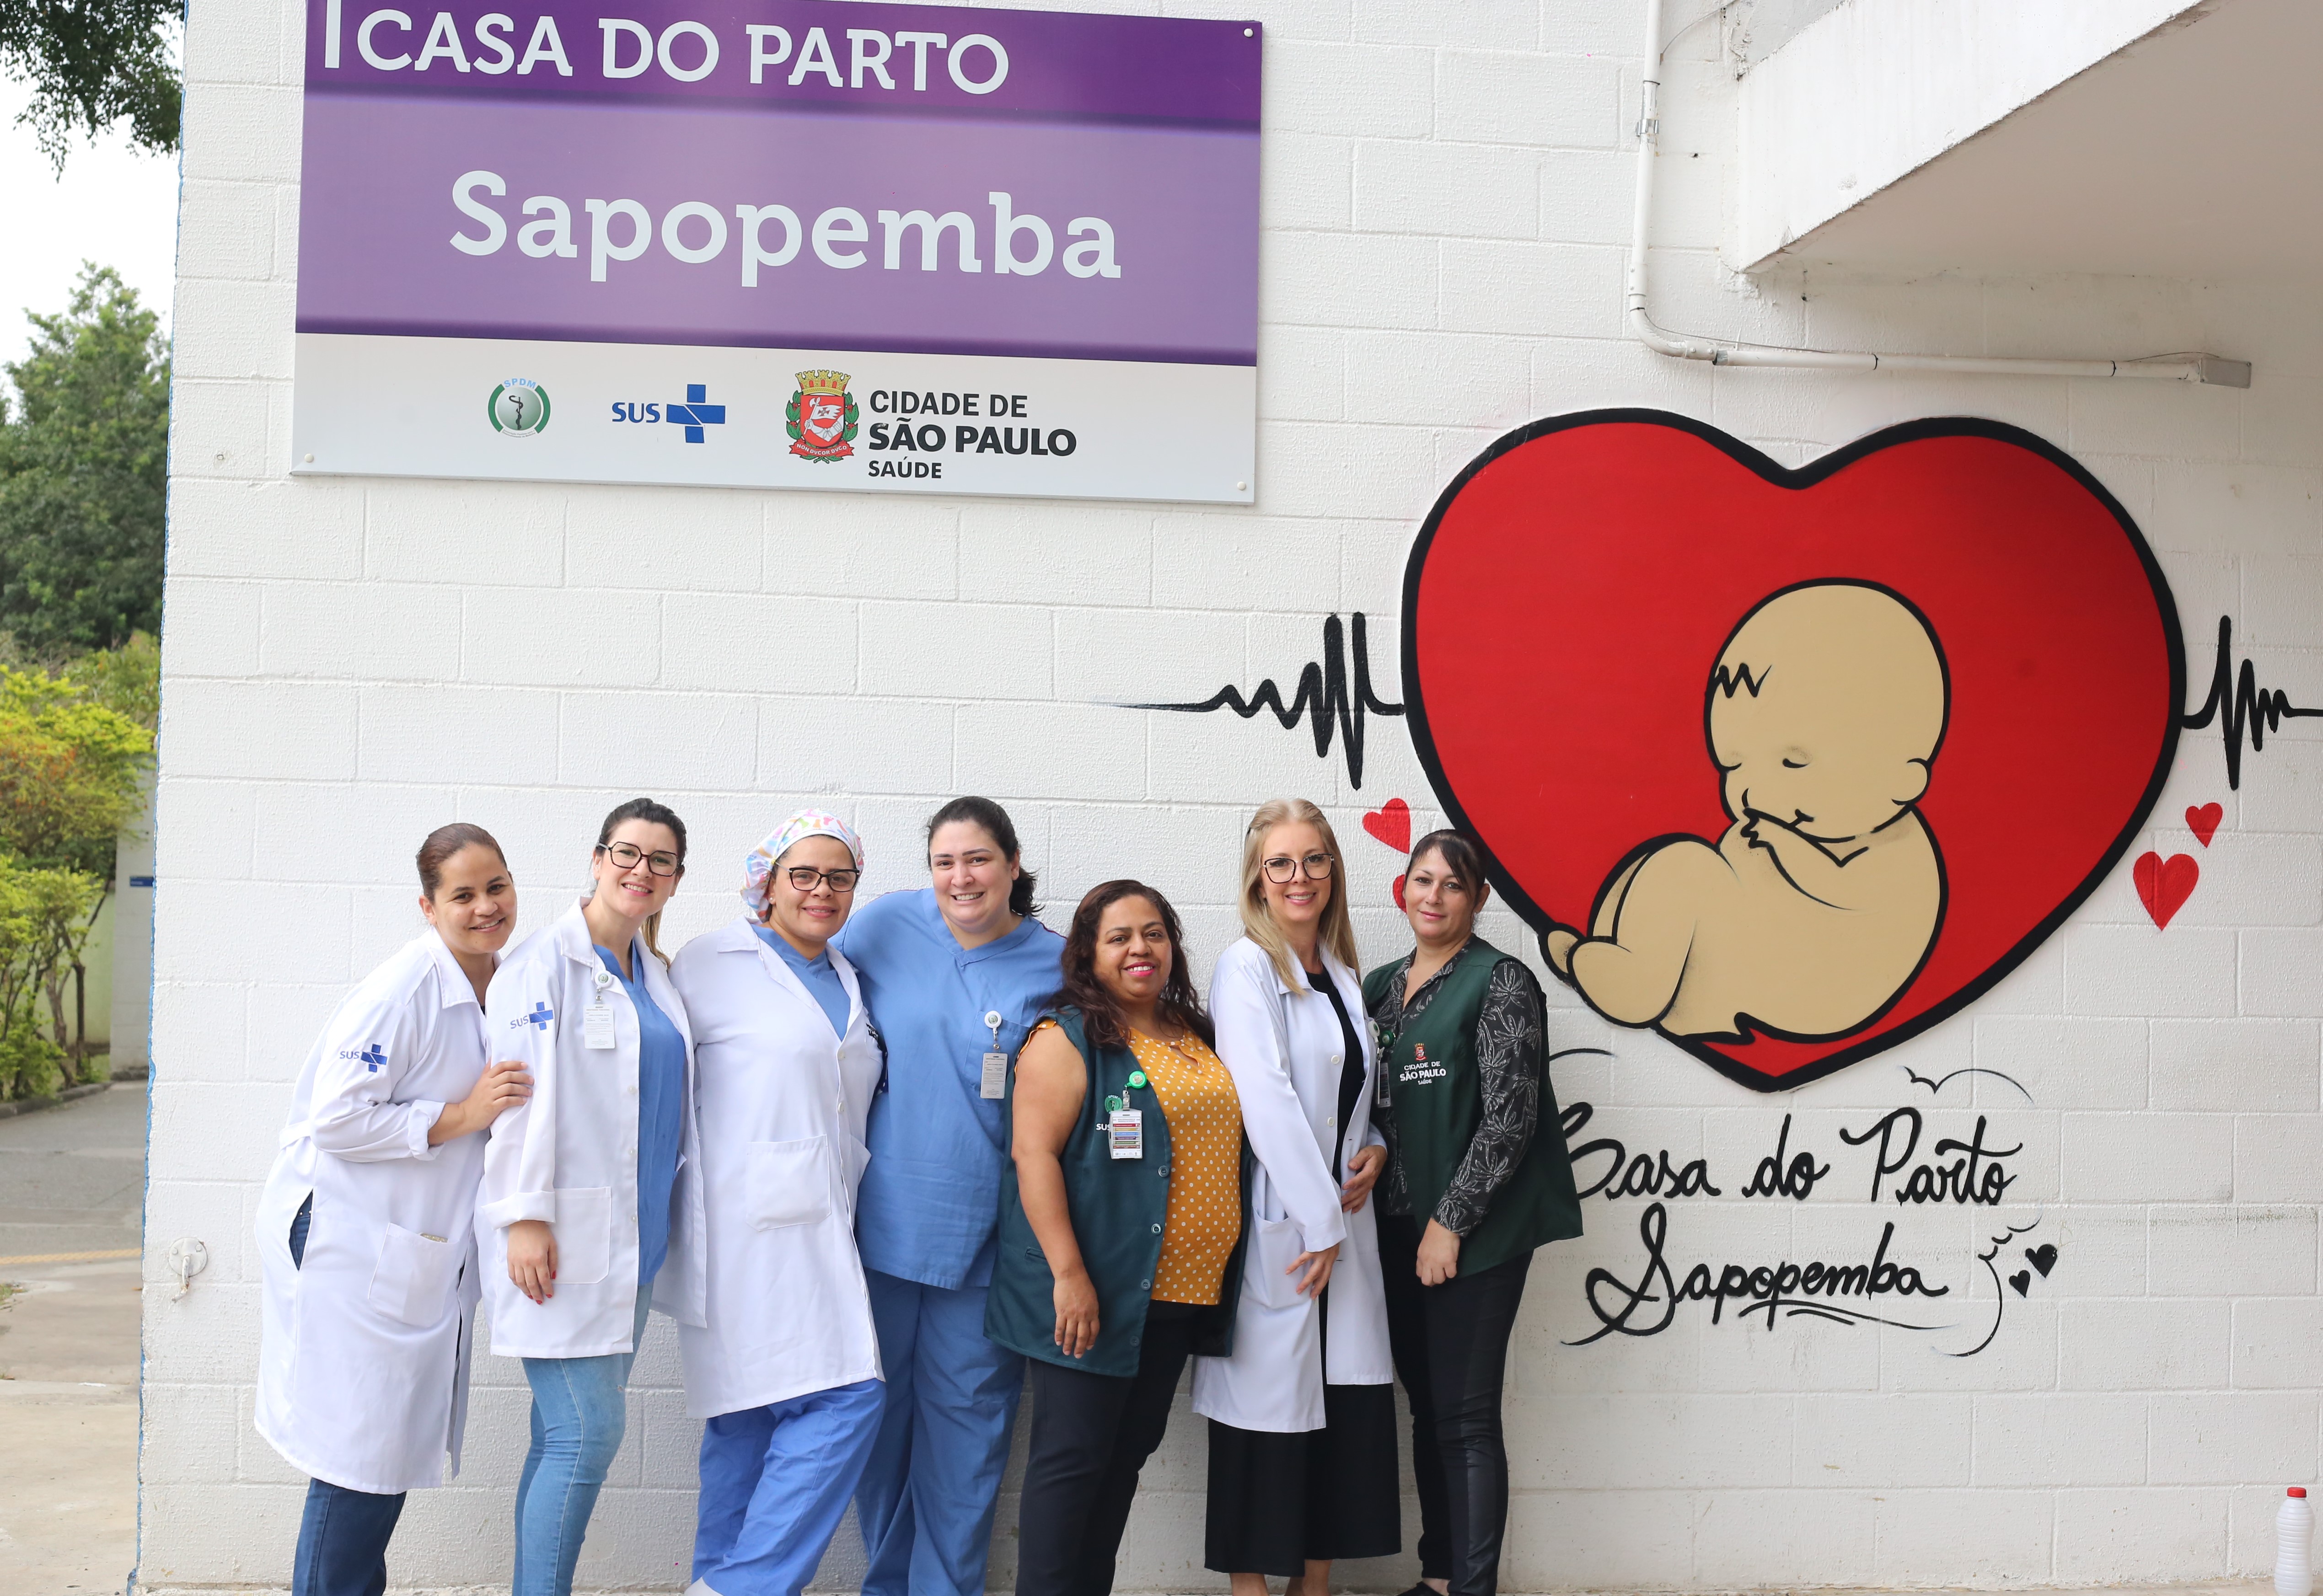 A foto mostra sete mulheres usando uniformes, posando em frente uma fachada, na qual estão uma placa identificando “Casa do Parto Sapopemba”, de um lado, e uma pintura mostrando um bebê recém-nascido dentro de um coração